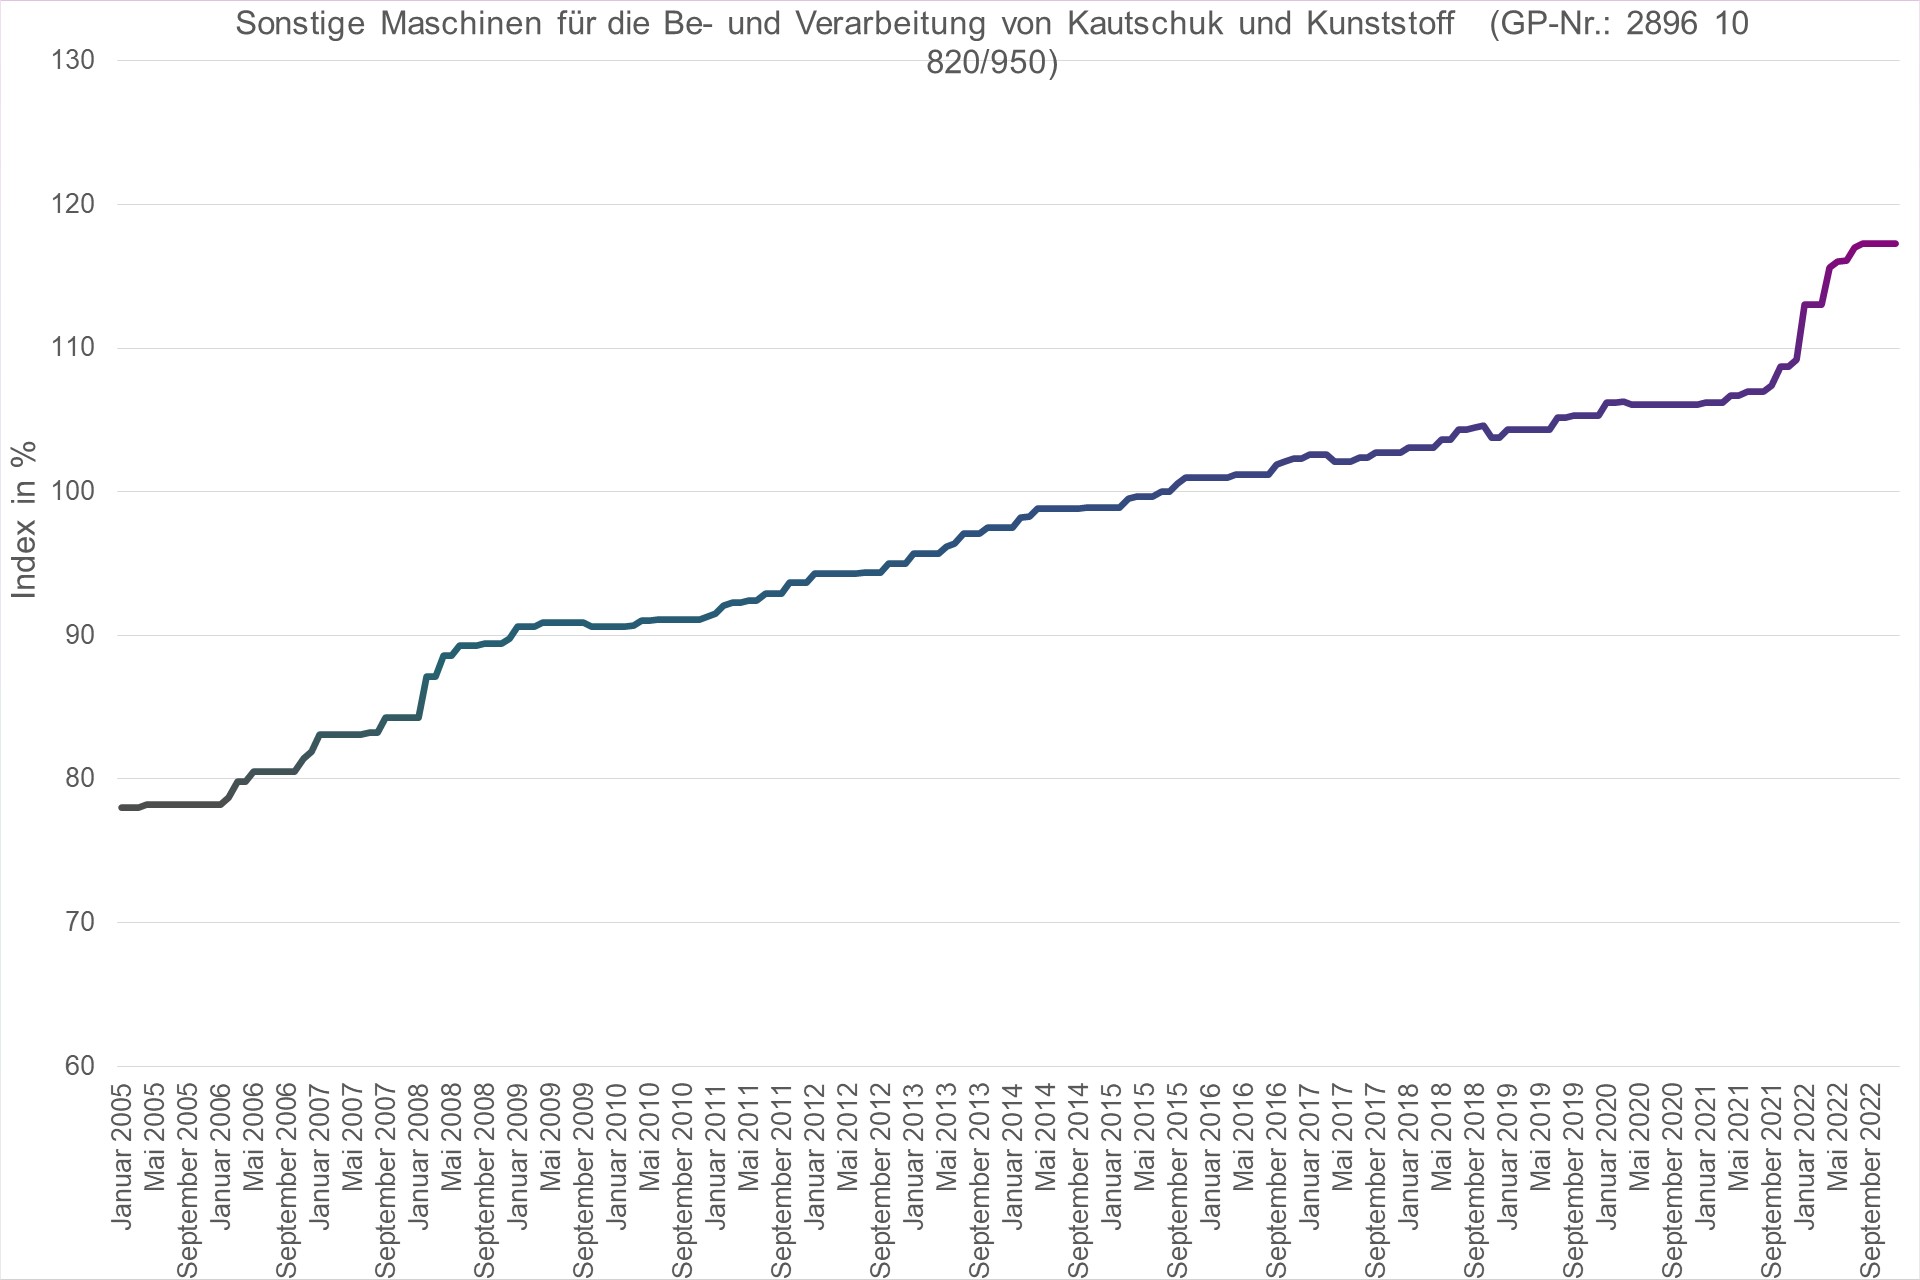 Grafik Preisindex Sonstige Maschinen für die Be- und Verarbeitung von Kautschuk und Kunststoff